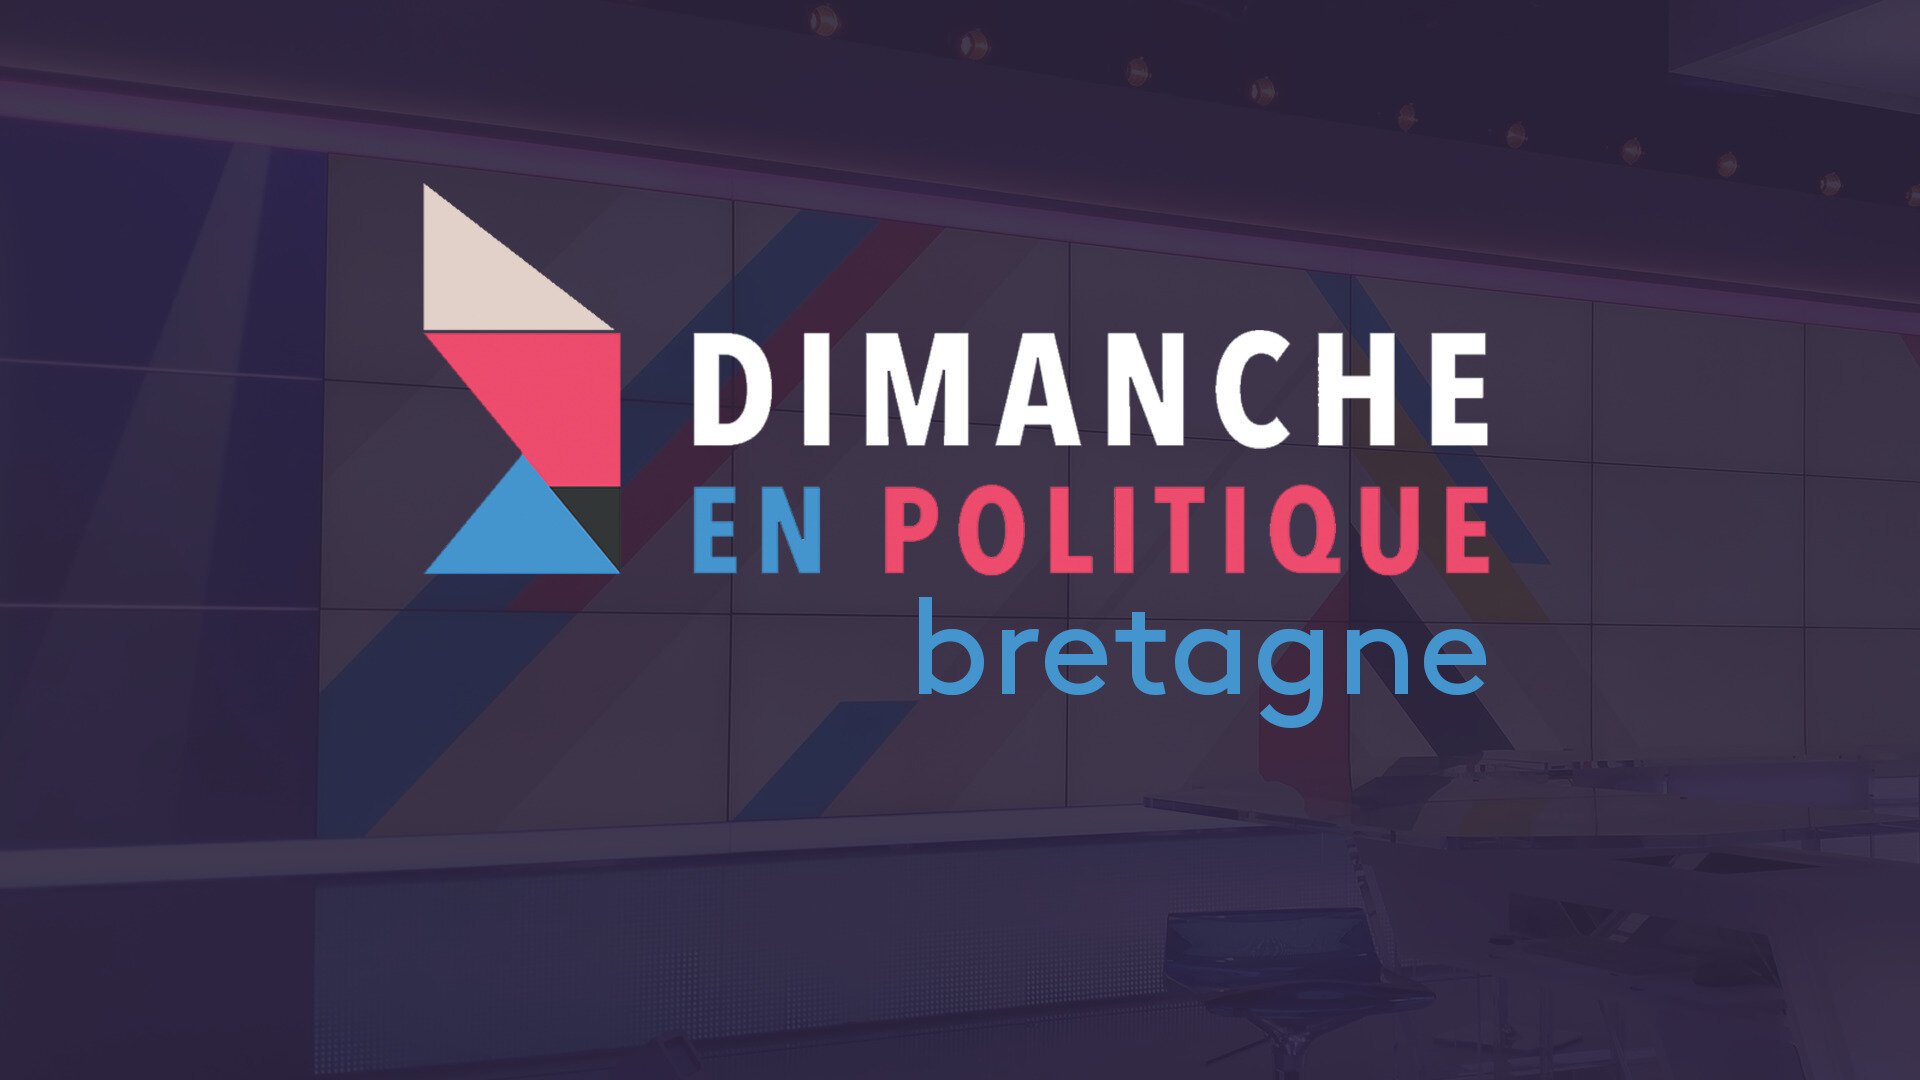 Dimanche en politique avec Gaël Le Bohec, député LREM d'Ille-et-Vilaine